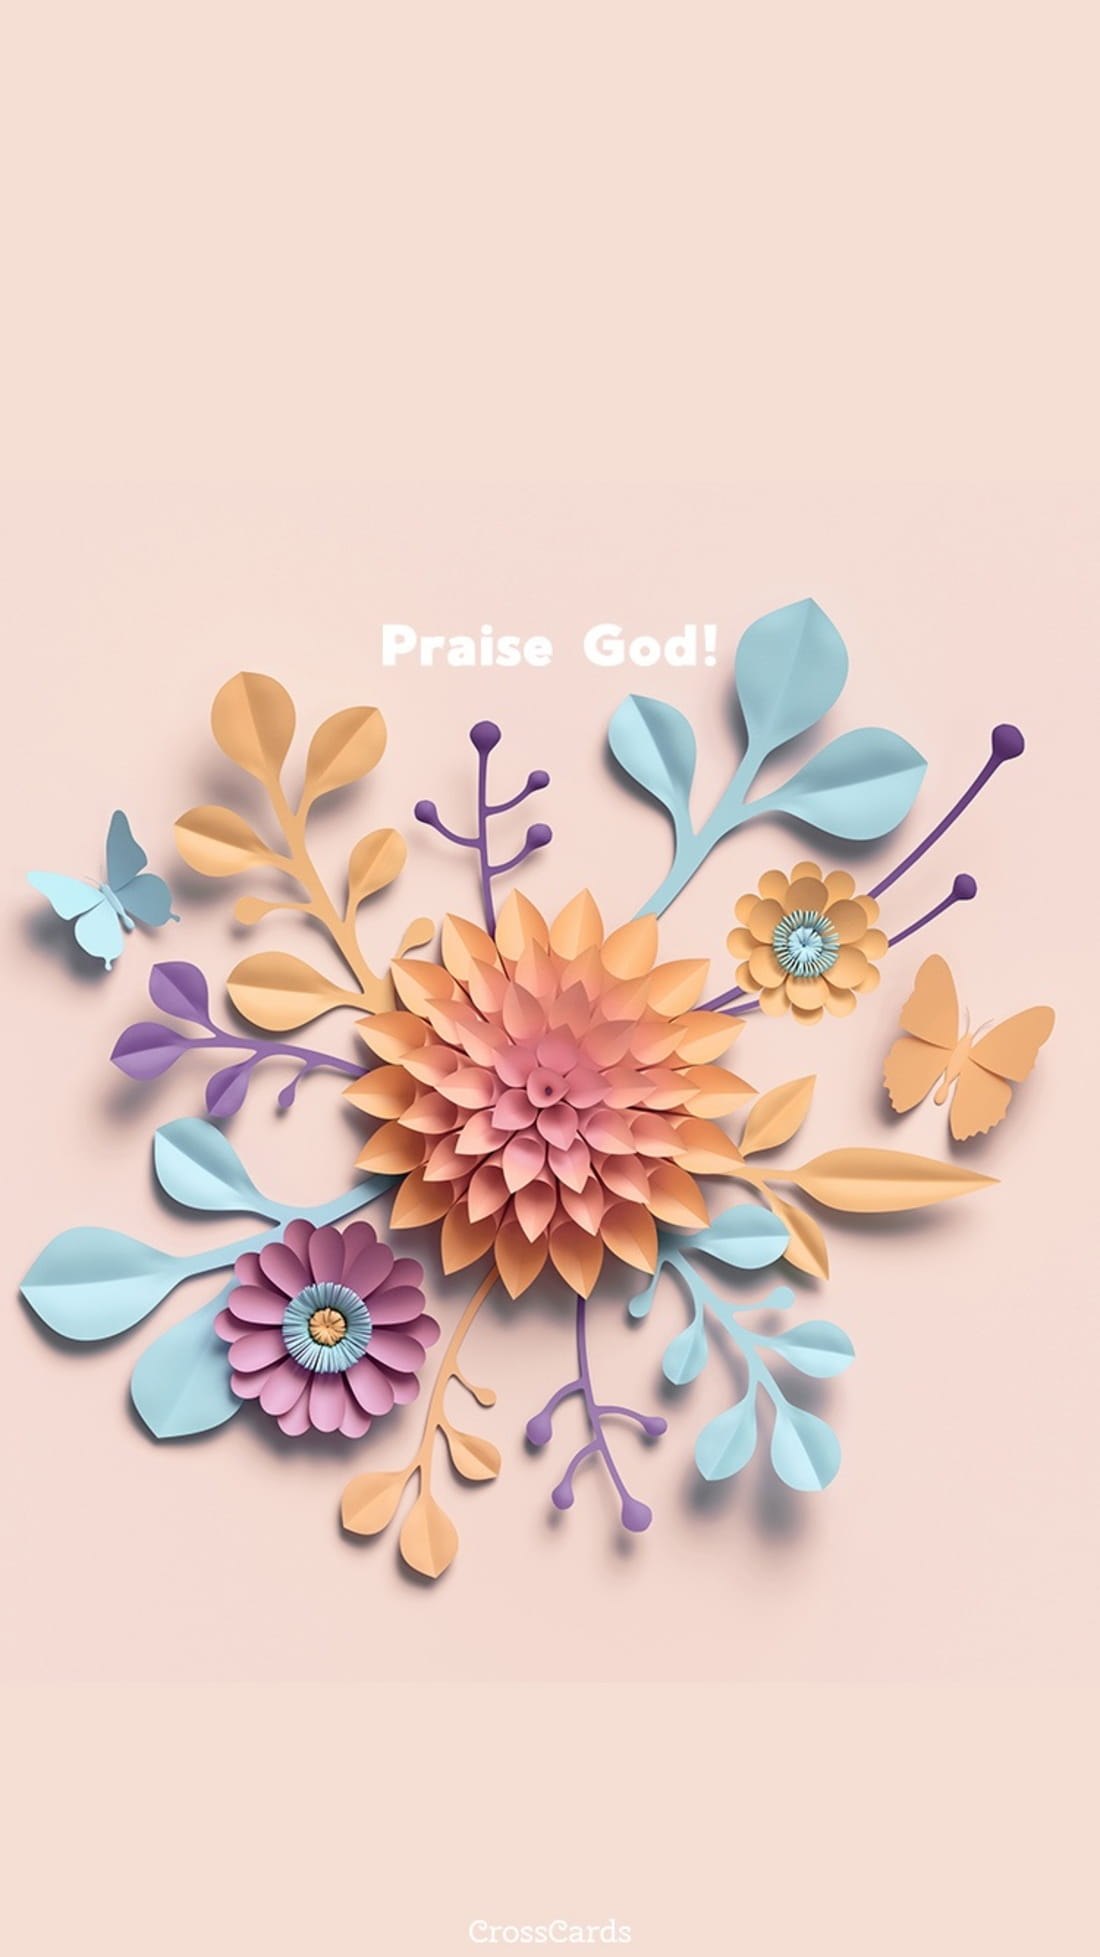 Praise God! mobile phone wallpaper